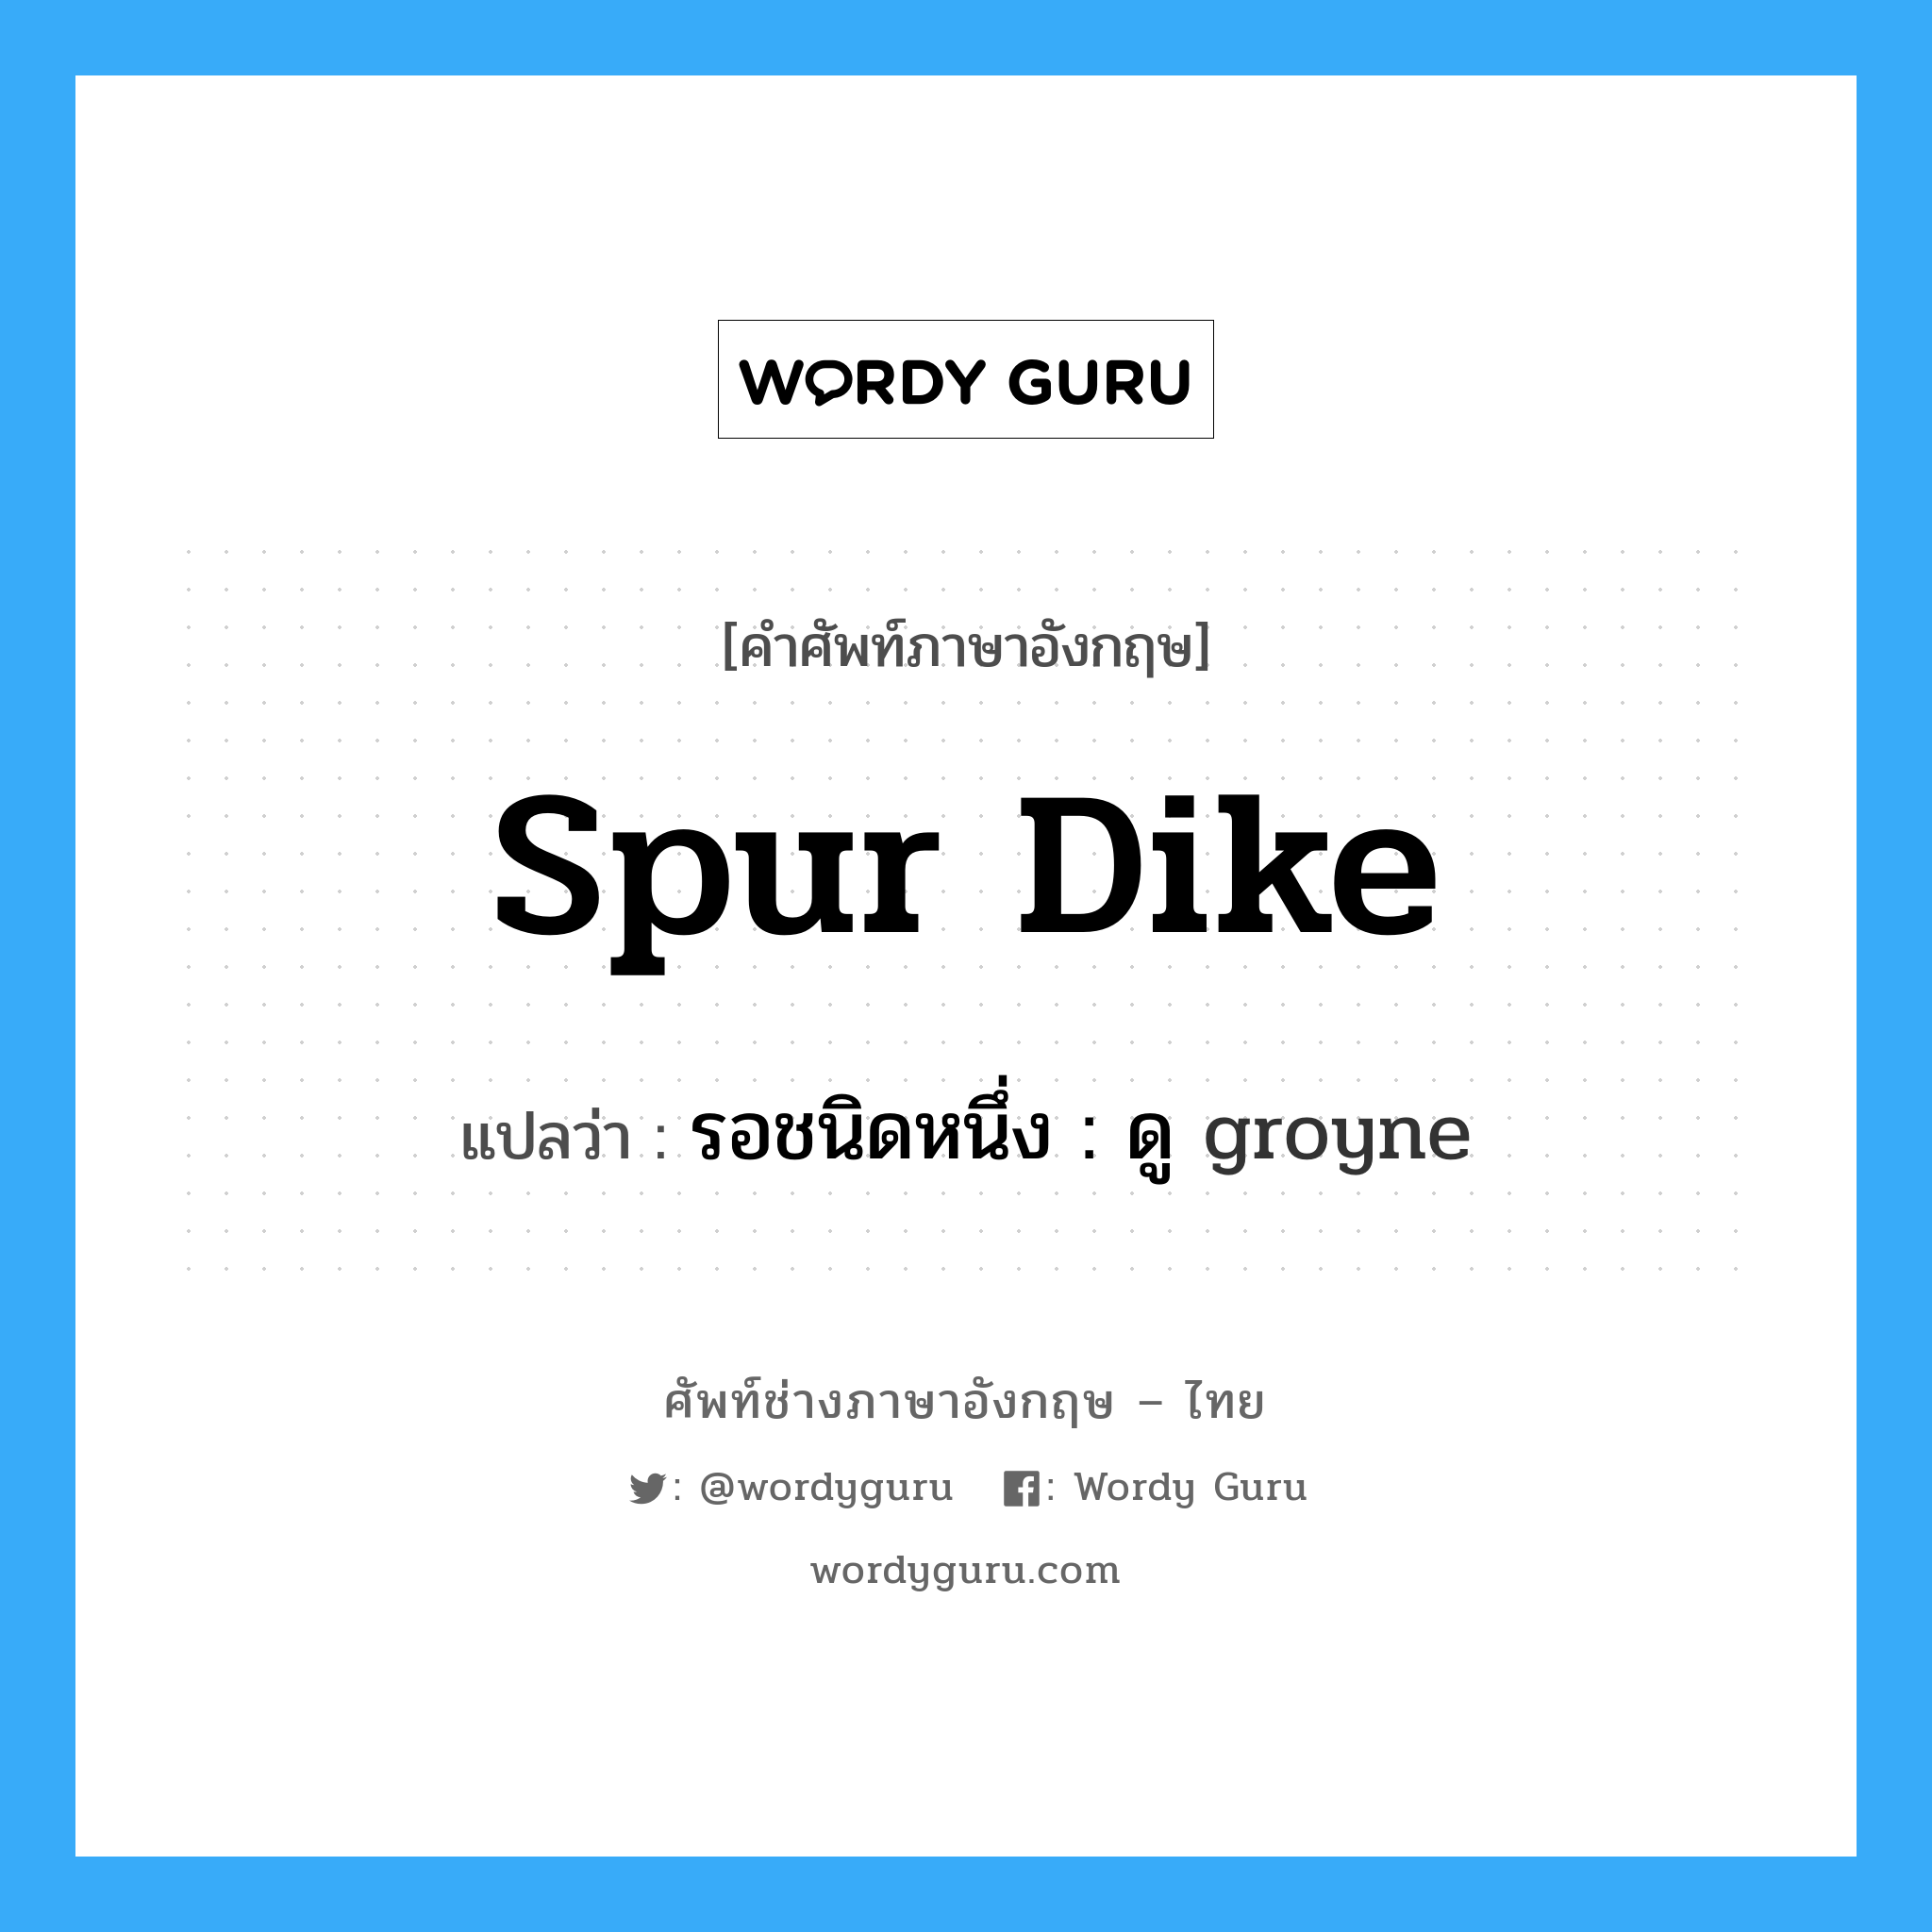 spur dike แปลว่า?, คำศัพท์ช่างภาษาอังกฤษ - ไทย spur dike คำศัพท์ภาษาอังกฤษ spur dike แปลว่า รอชนิดหนึ่ง : ดู groyne